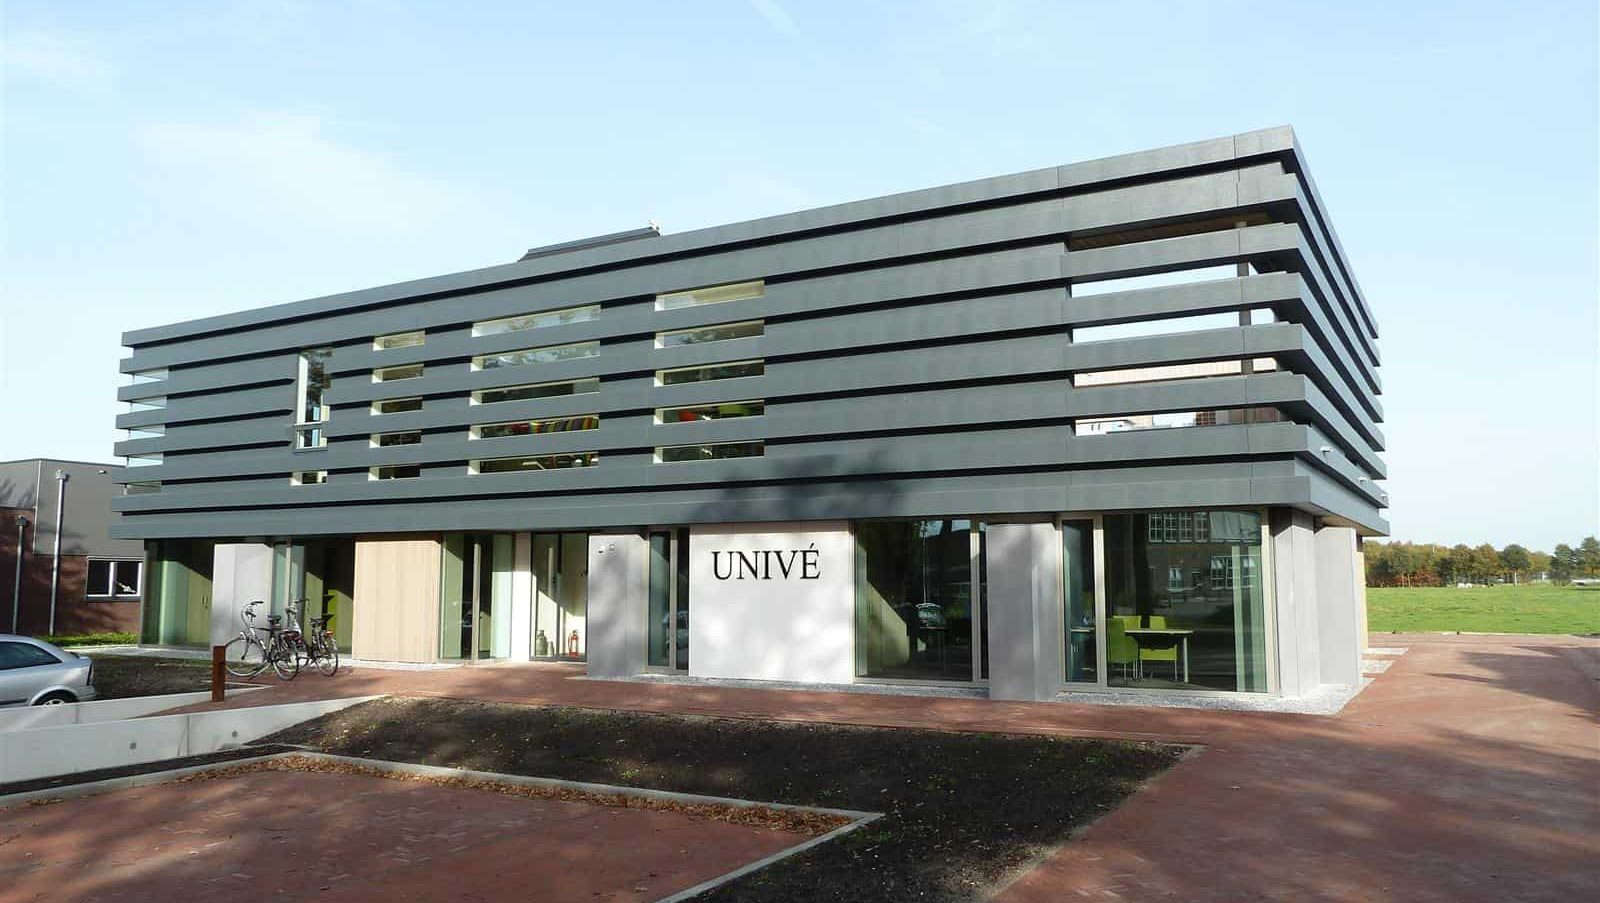 Voorkant van het kantoor Univé in Dwingeloo uitgerust met een MD Flack gevel in brede stroken